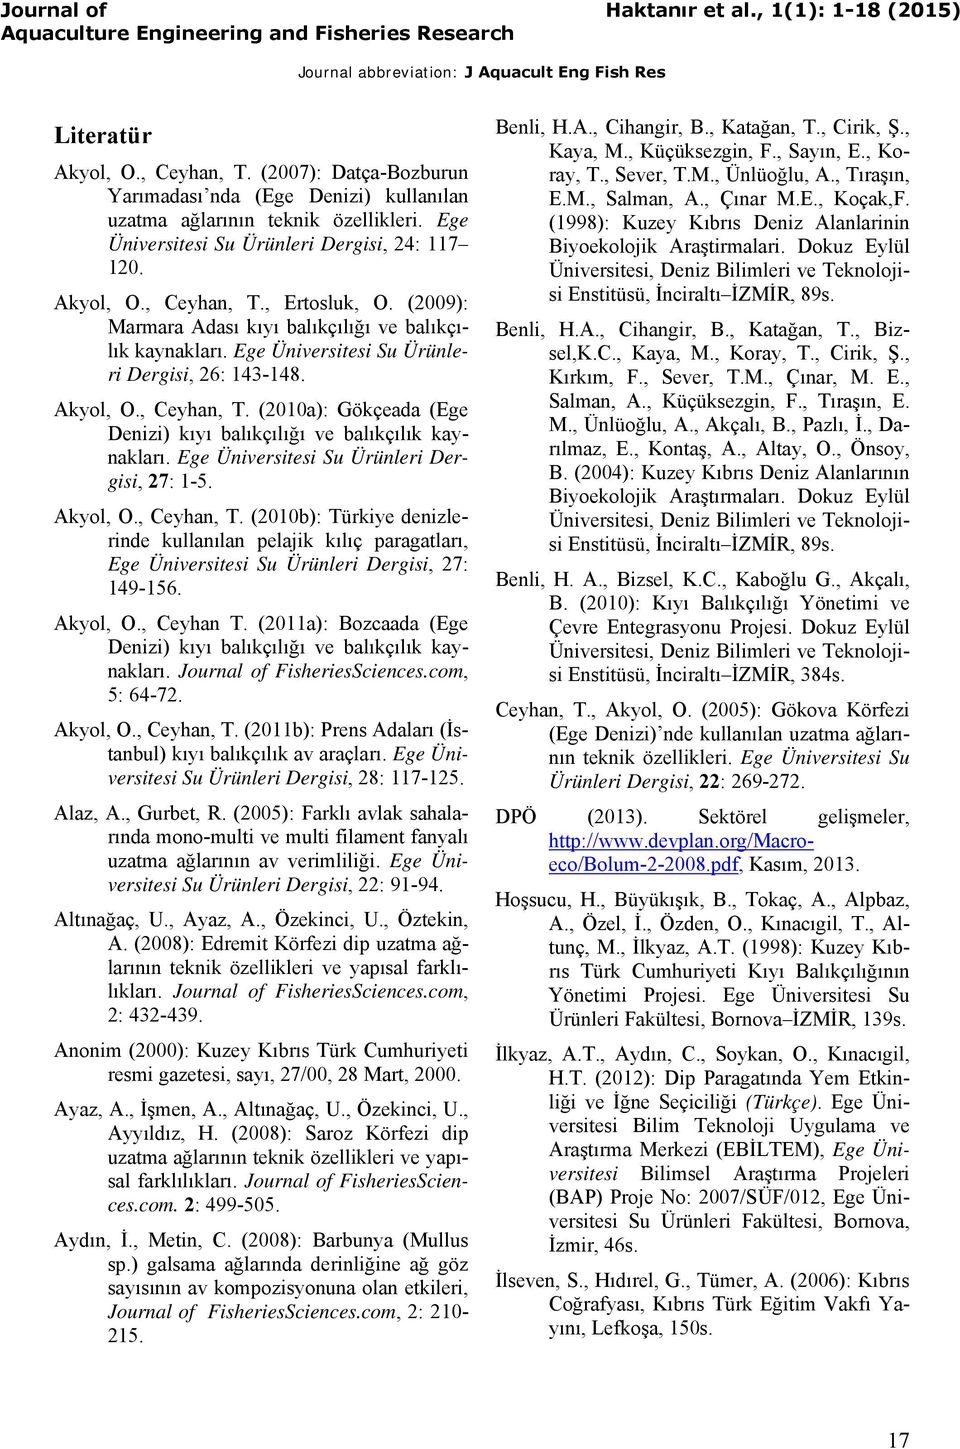 (2010a): Gökçeada (Ege Denizi) kıyı balıkçılığı ve balıkçılık kaynakları. Ege Üniversitesi Su Ürünleri Dergisi, 27: 1-5. Akyol, O., Ceyhan, T.